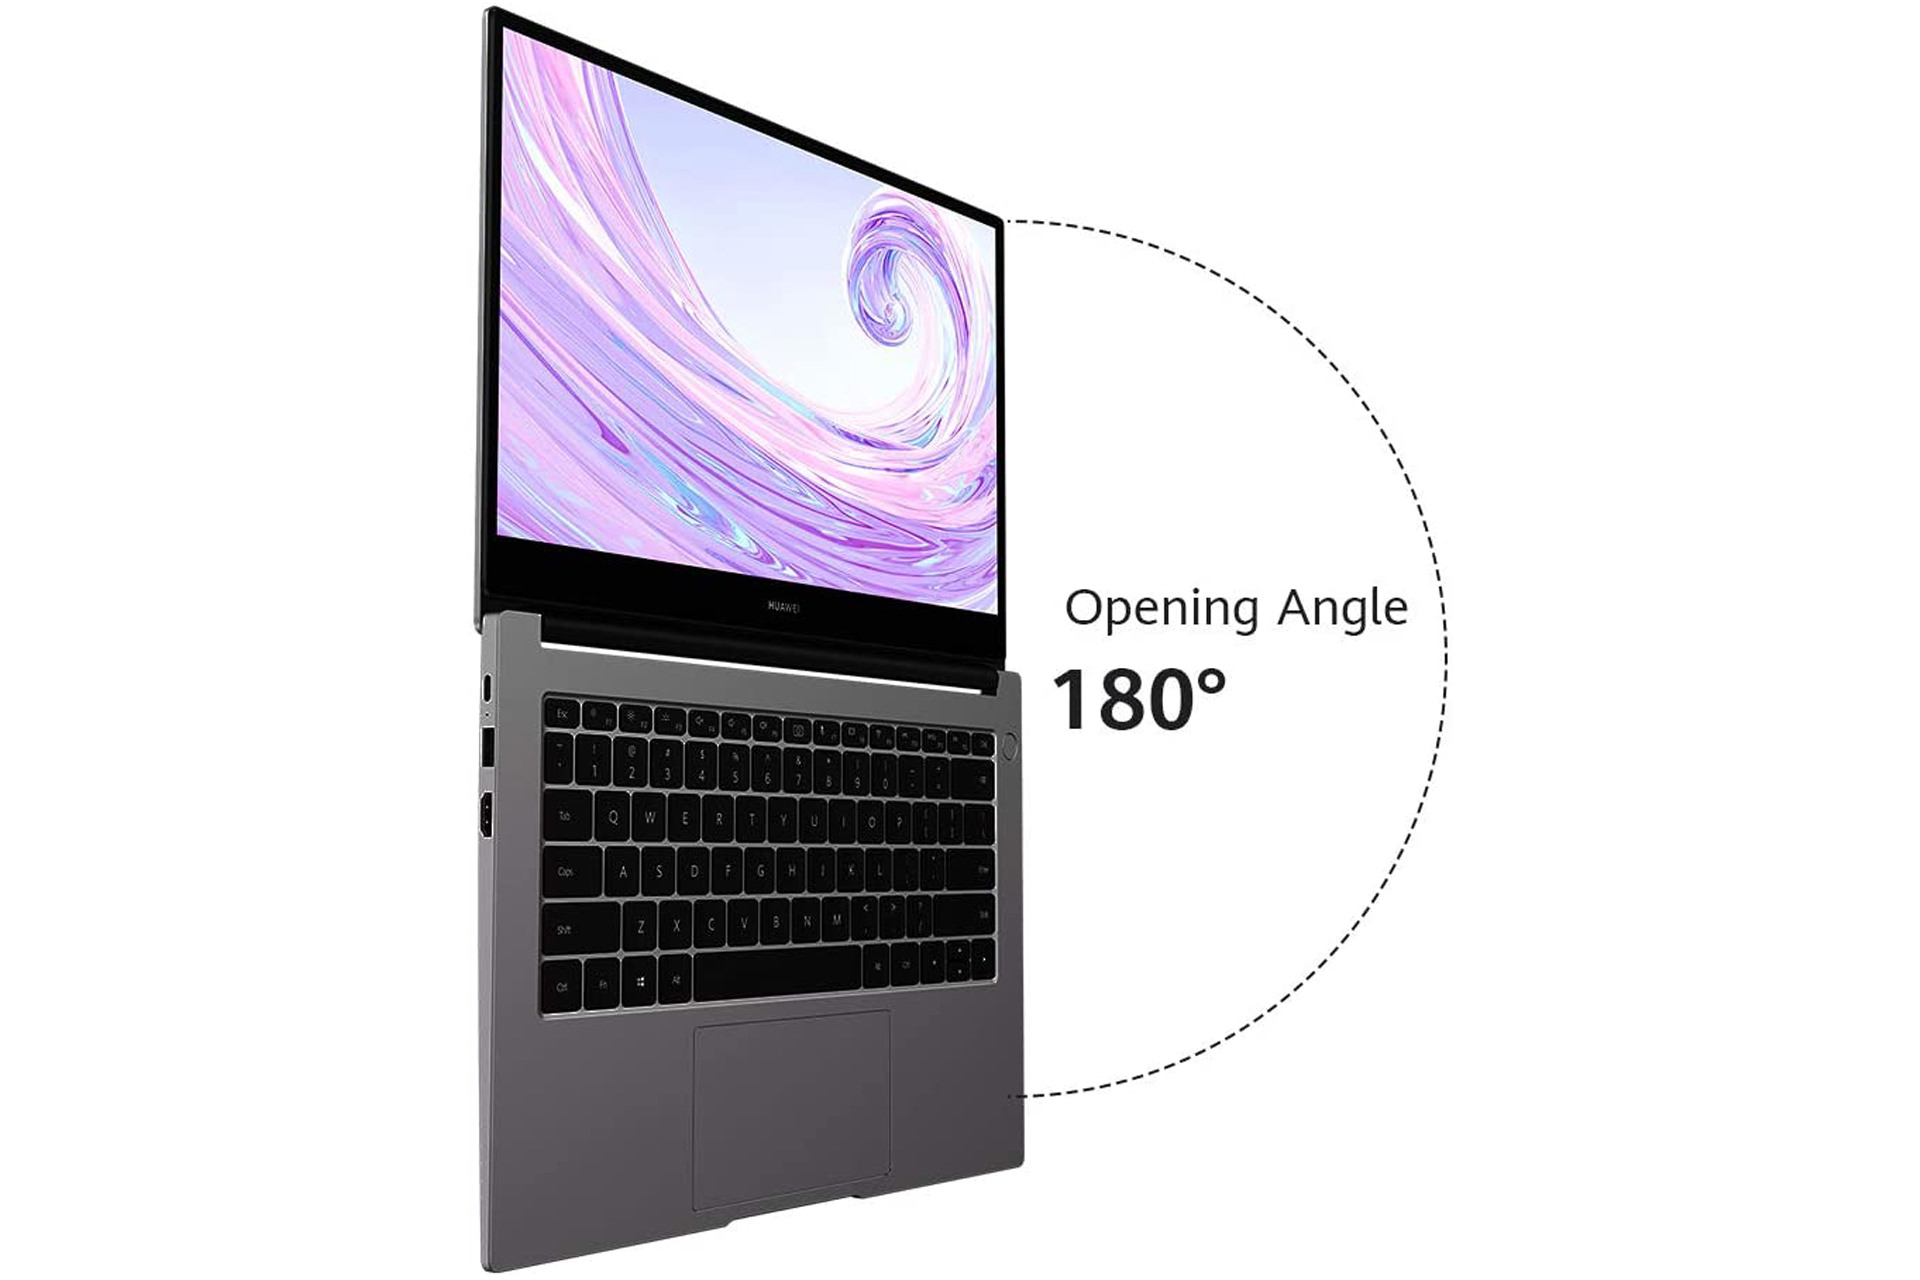 huawei matebook d14 laptop opening angle - میت بوک D14 هواوی؛ لپ تاپی زیبا با قدرت کافی برای کارهای روزمره